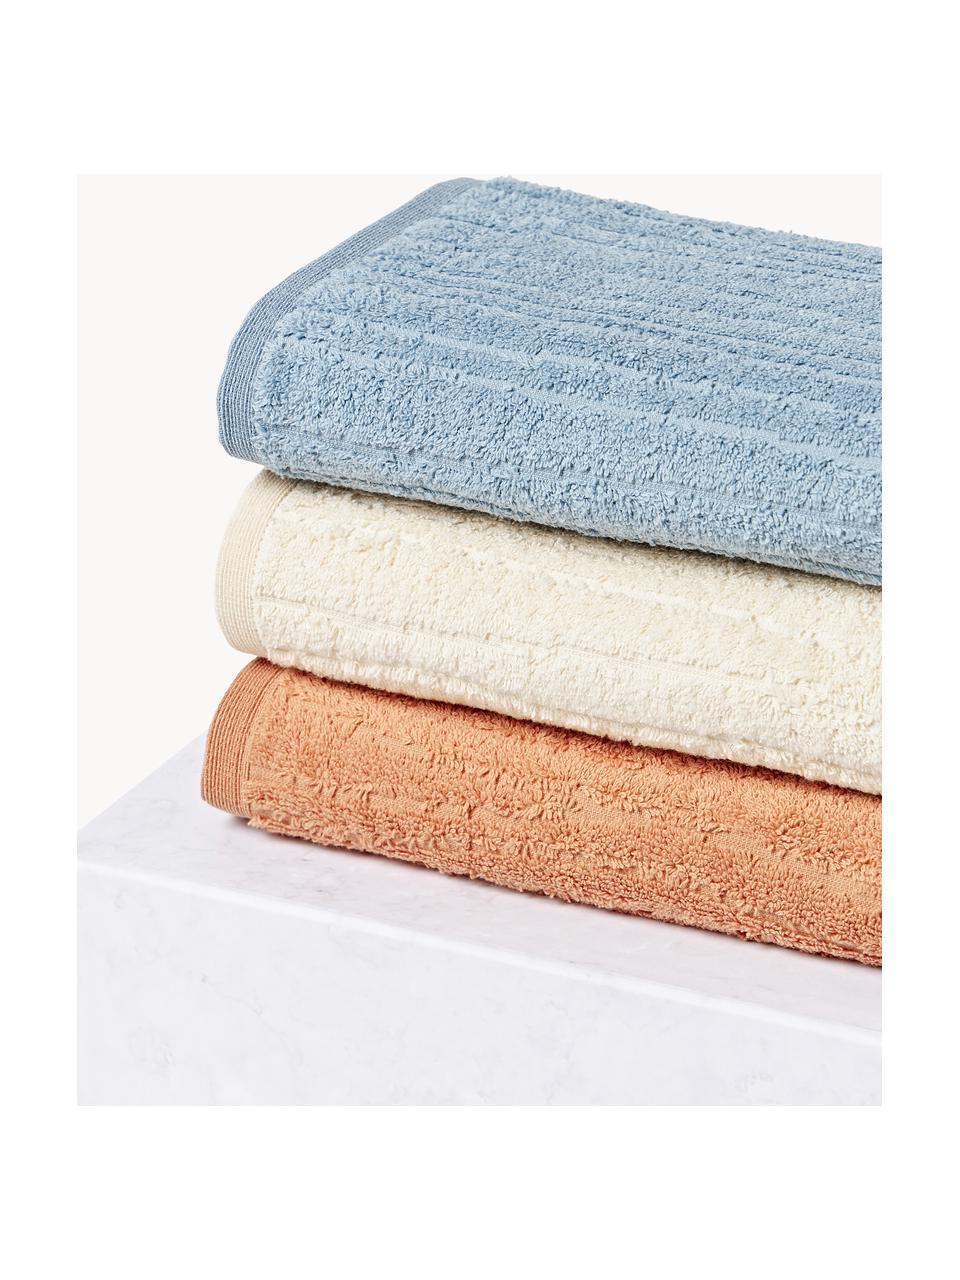 Set de toallas Audrina, tamaños diferentes, Gris azulado, Set de 4 (toallas lavabo y toallas de ducha)